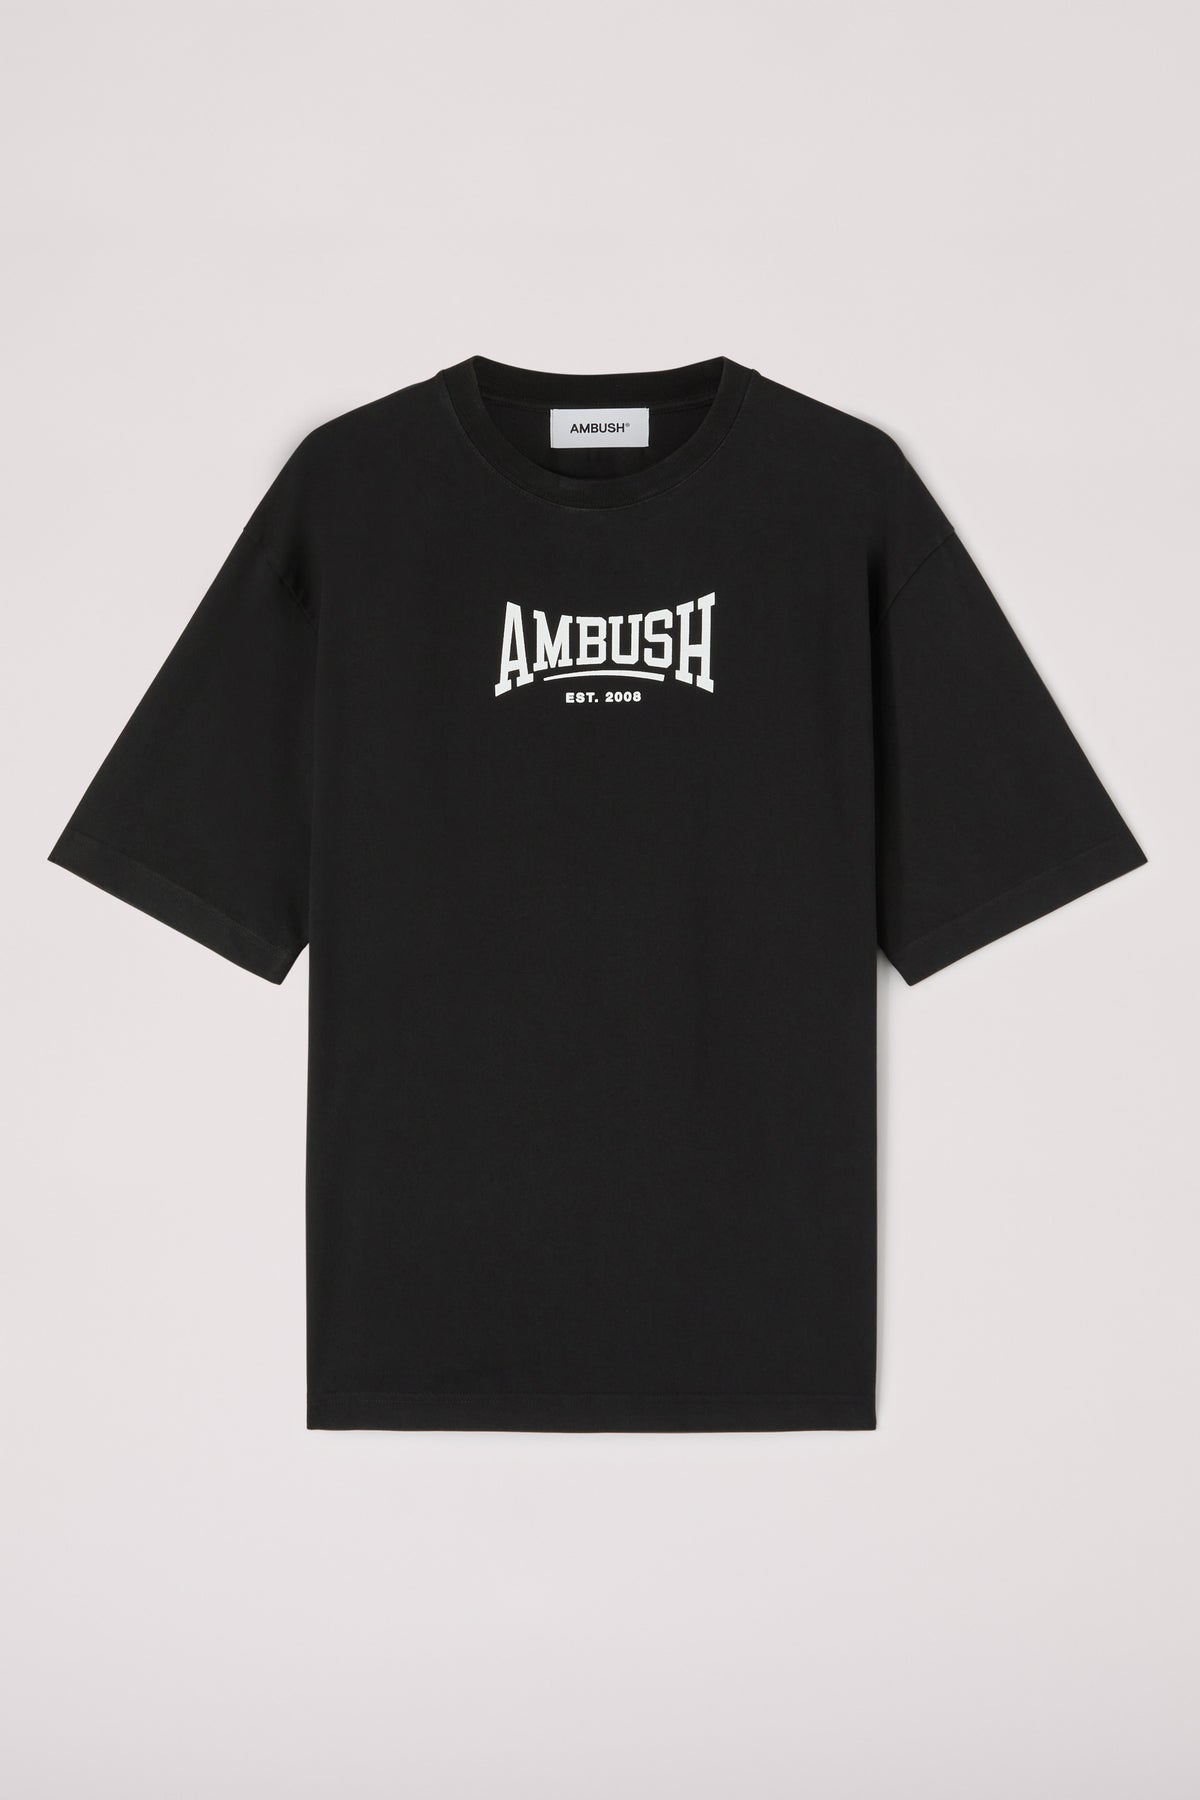 AMBUSH Graphic T-Shirt - Black